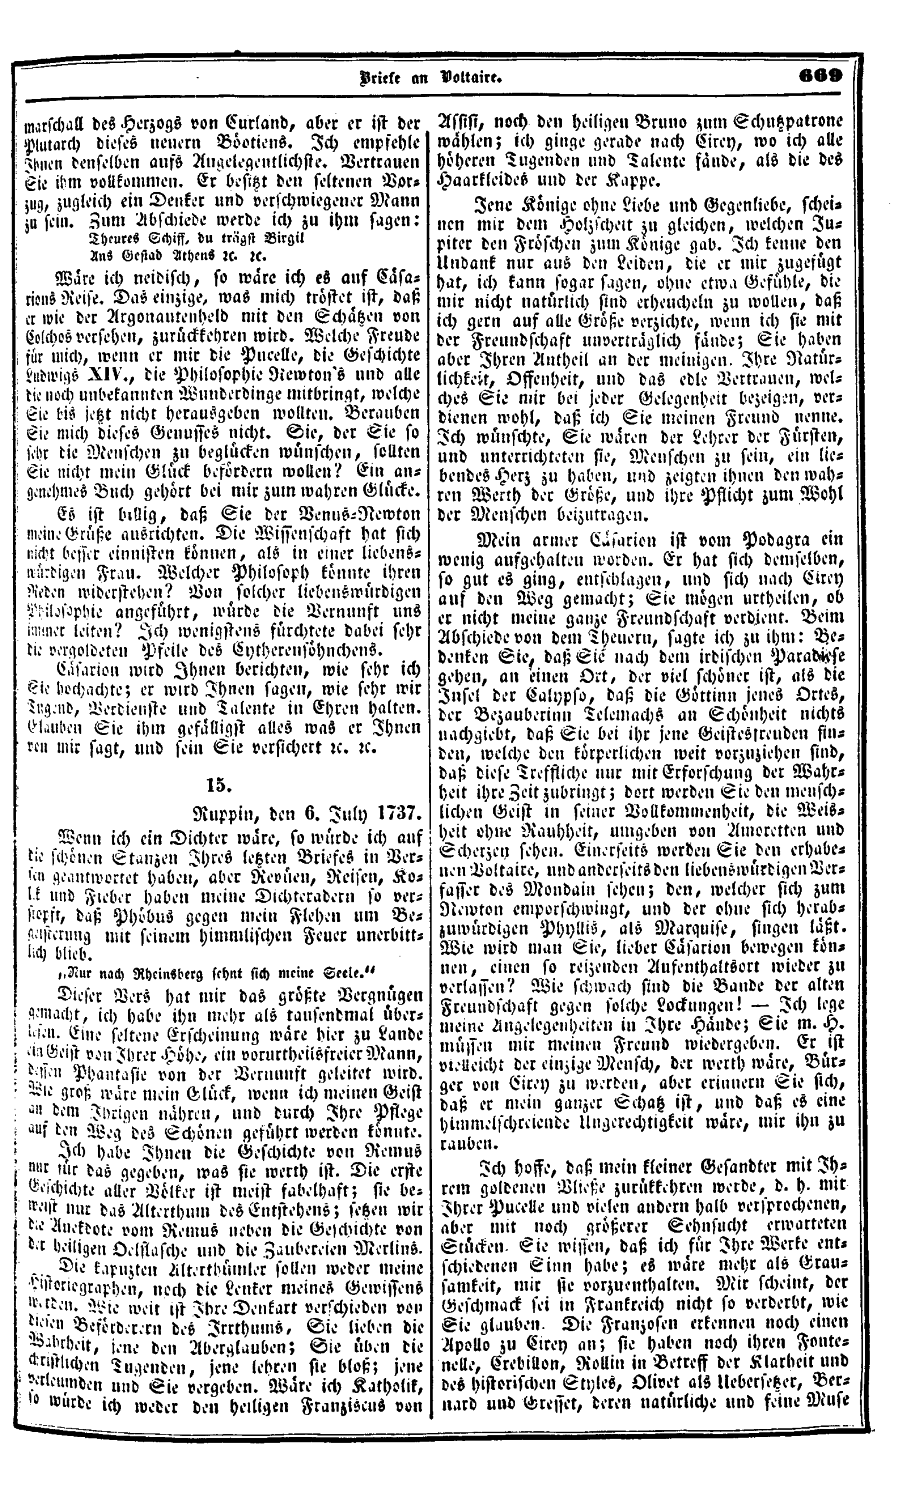 S. 669, Obj. 2